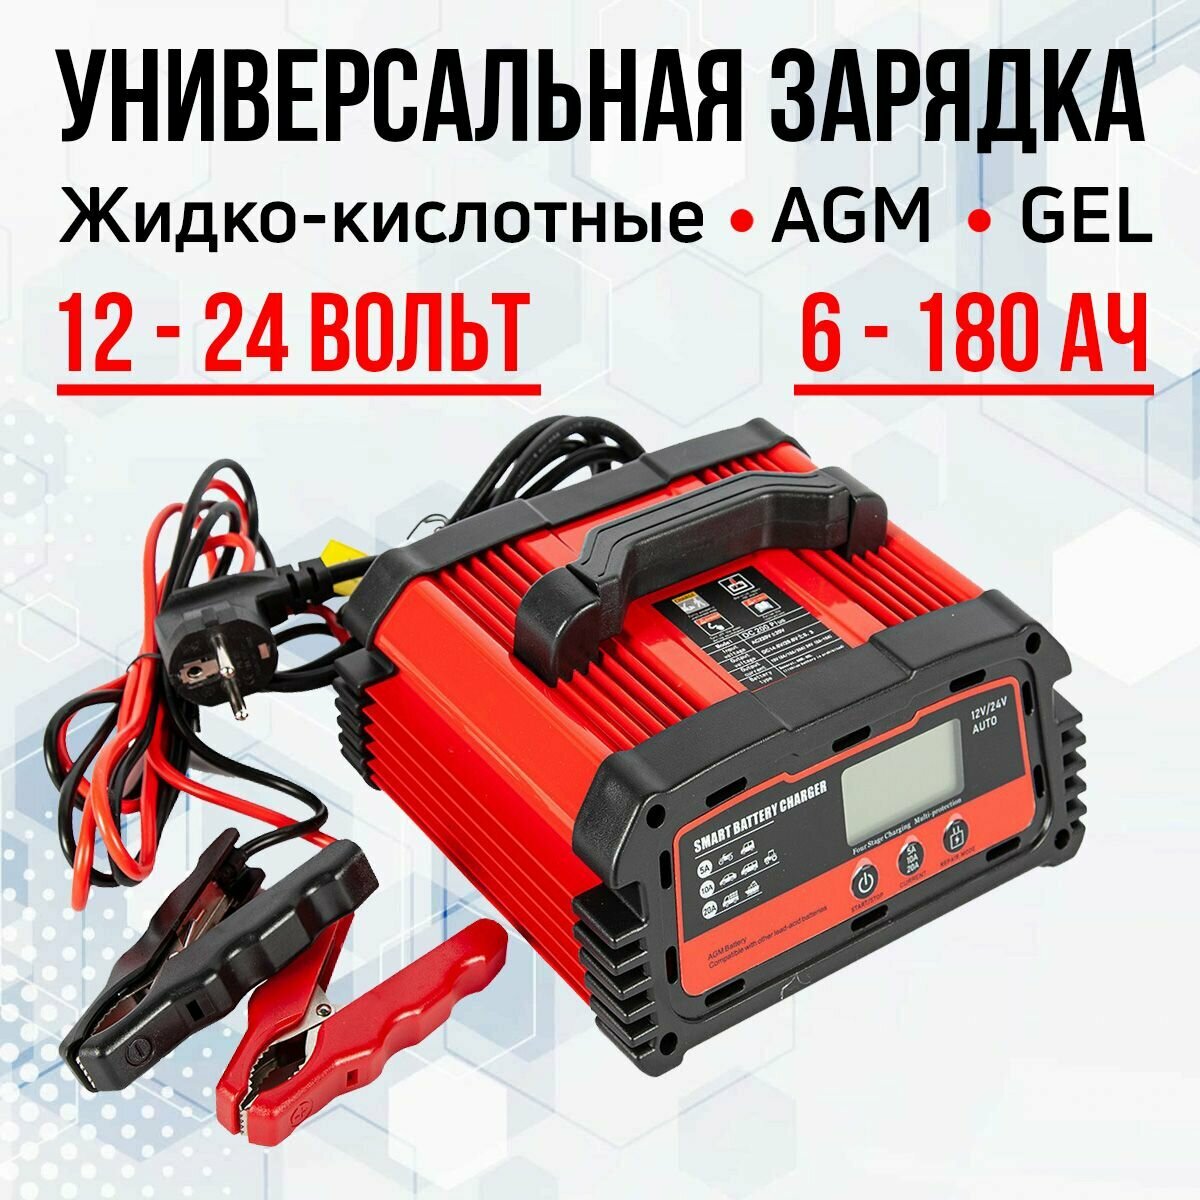 Зарядное устройство для AGM, жидкостных, GEL и LiFePo4 аккумуляторов 12-24V/6-180AН